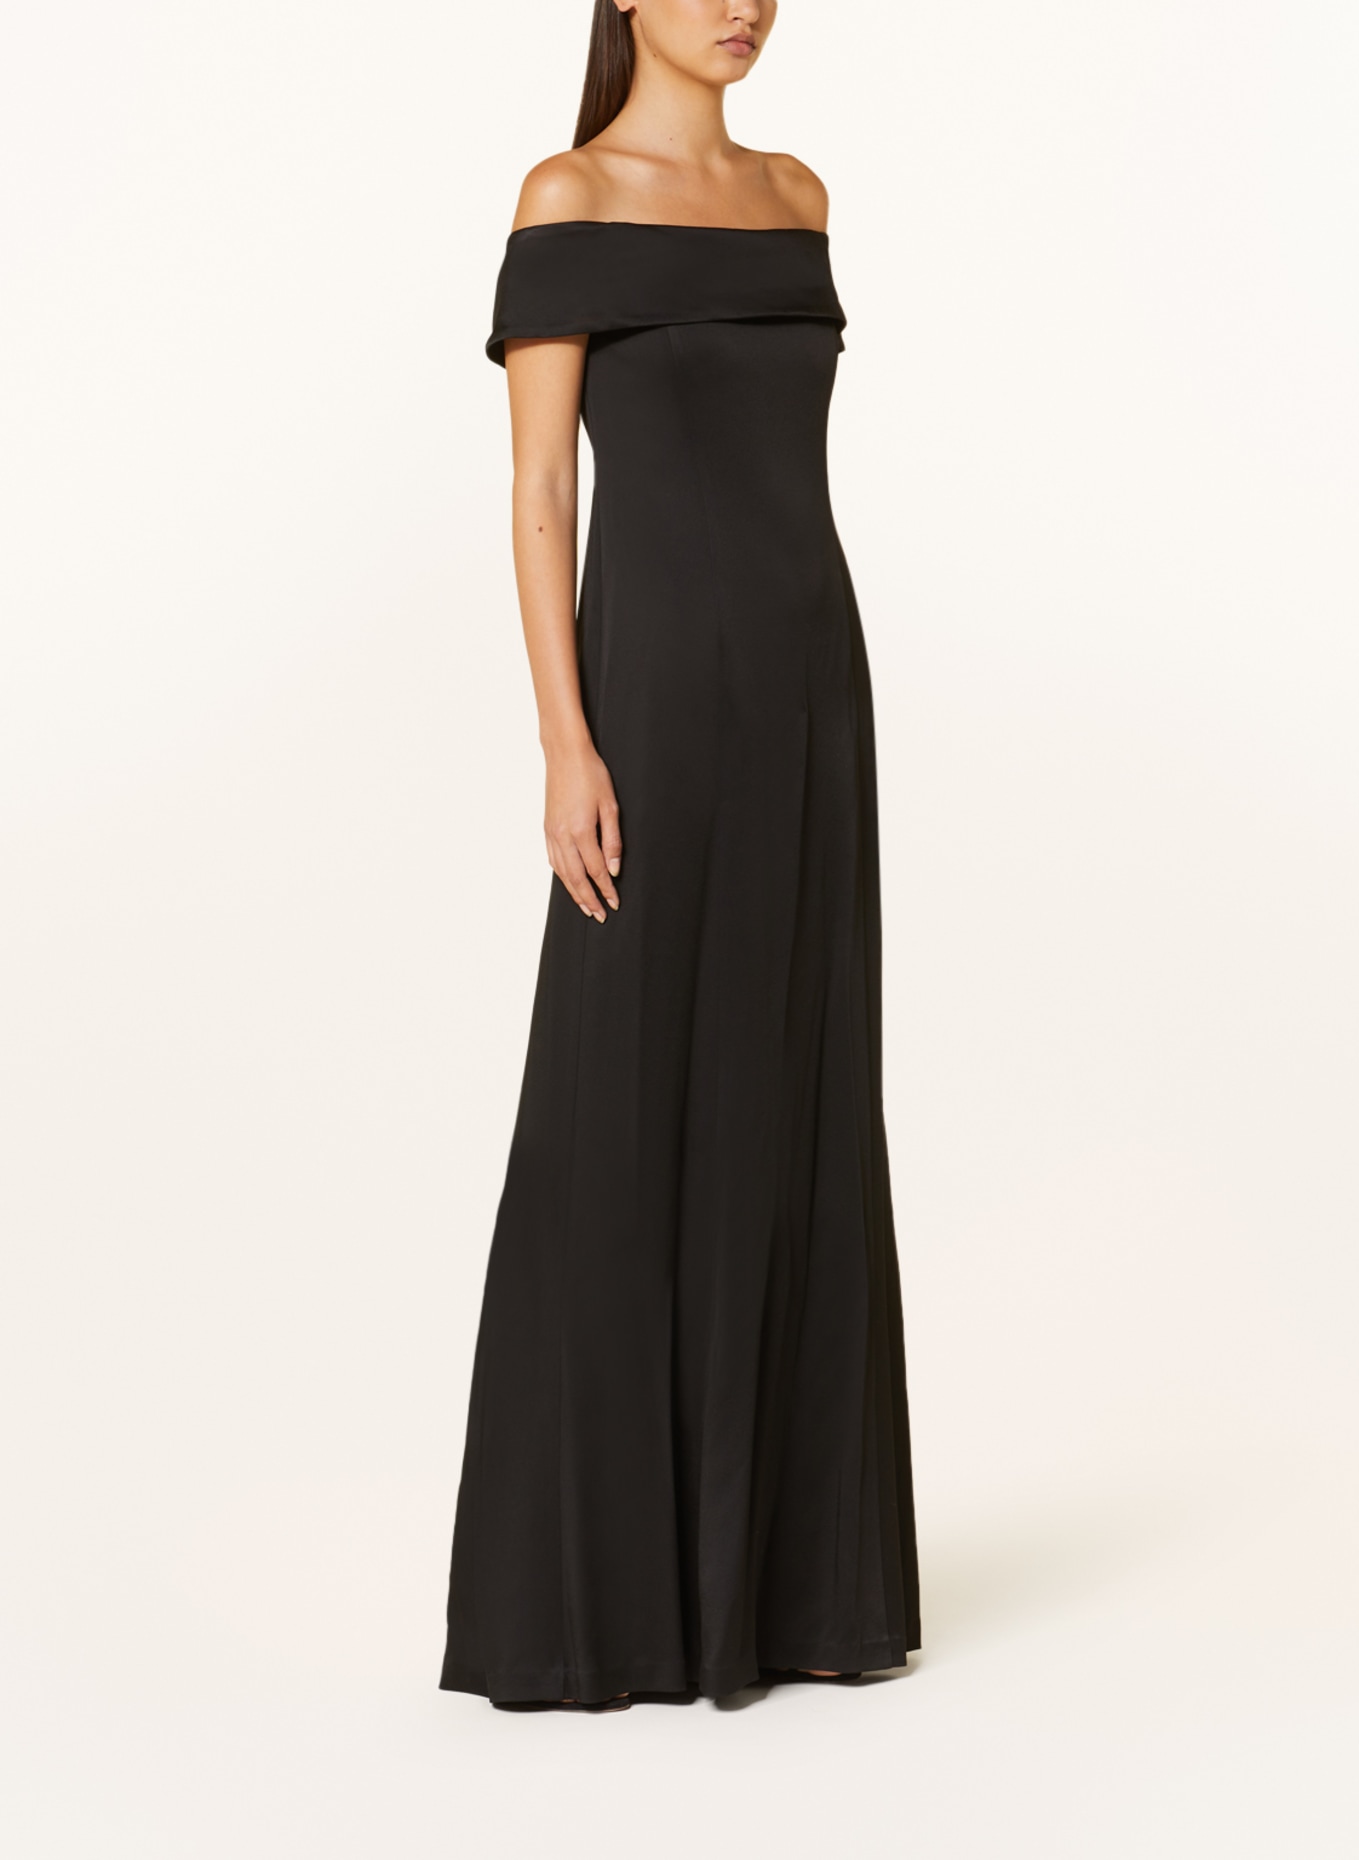 IVY OAK Evening dress NADELLE in satin, Color: BLACK (Image 2)